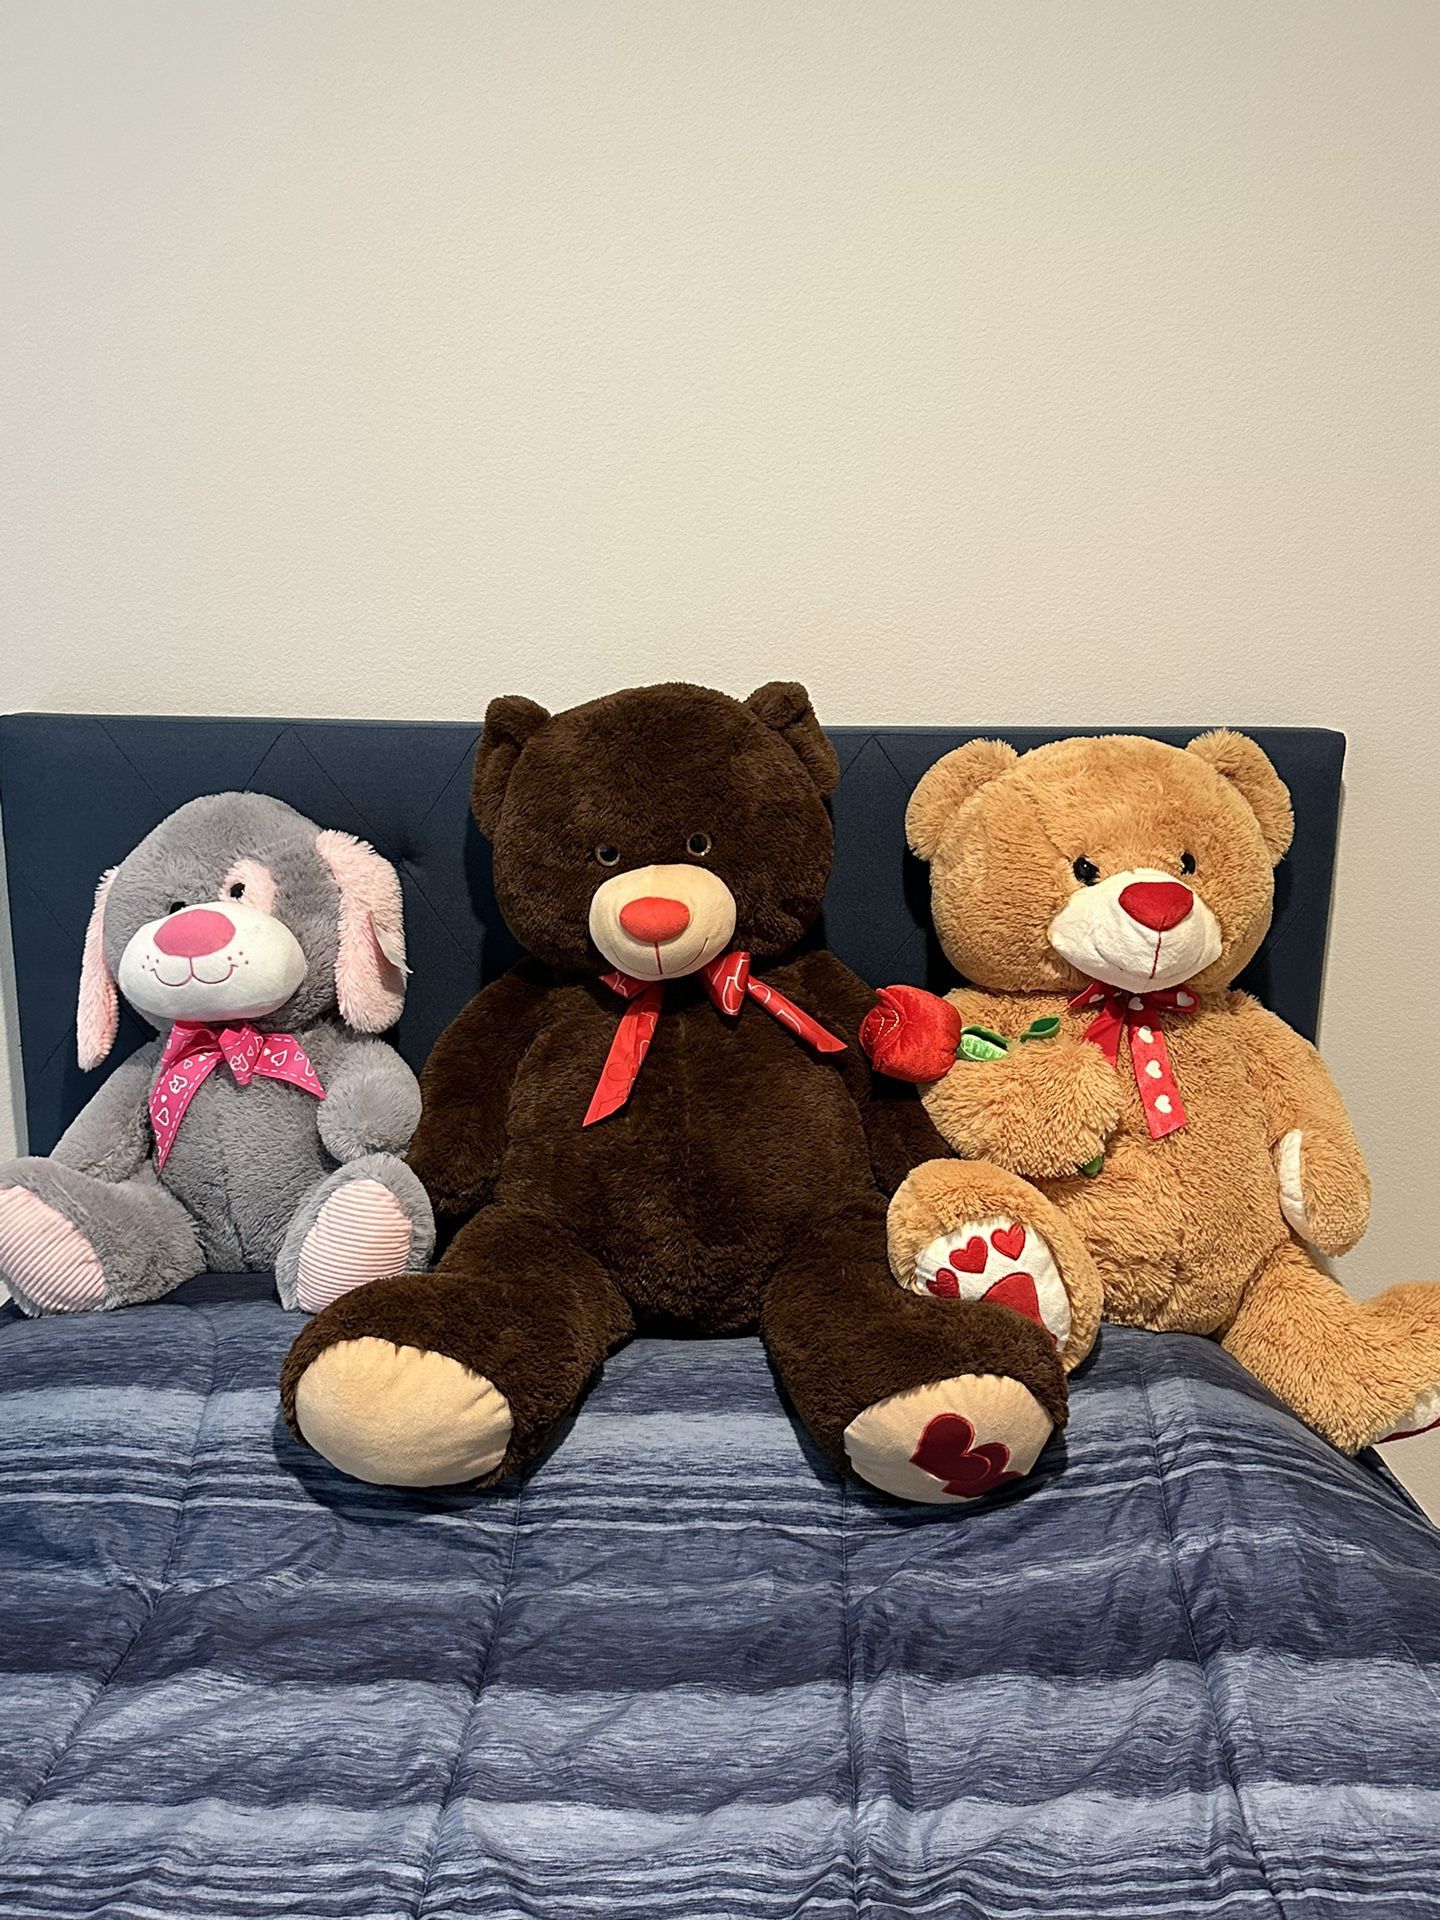  Teddy Bears